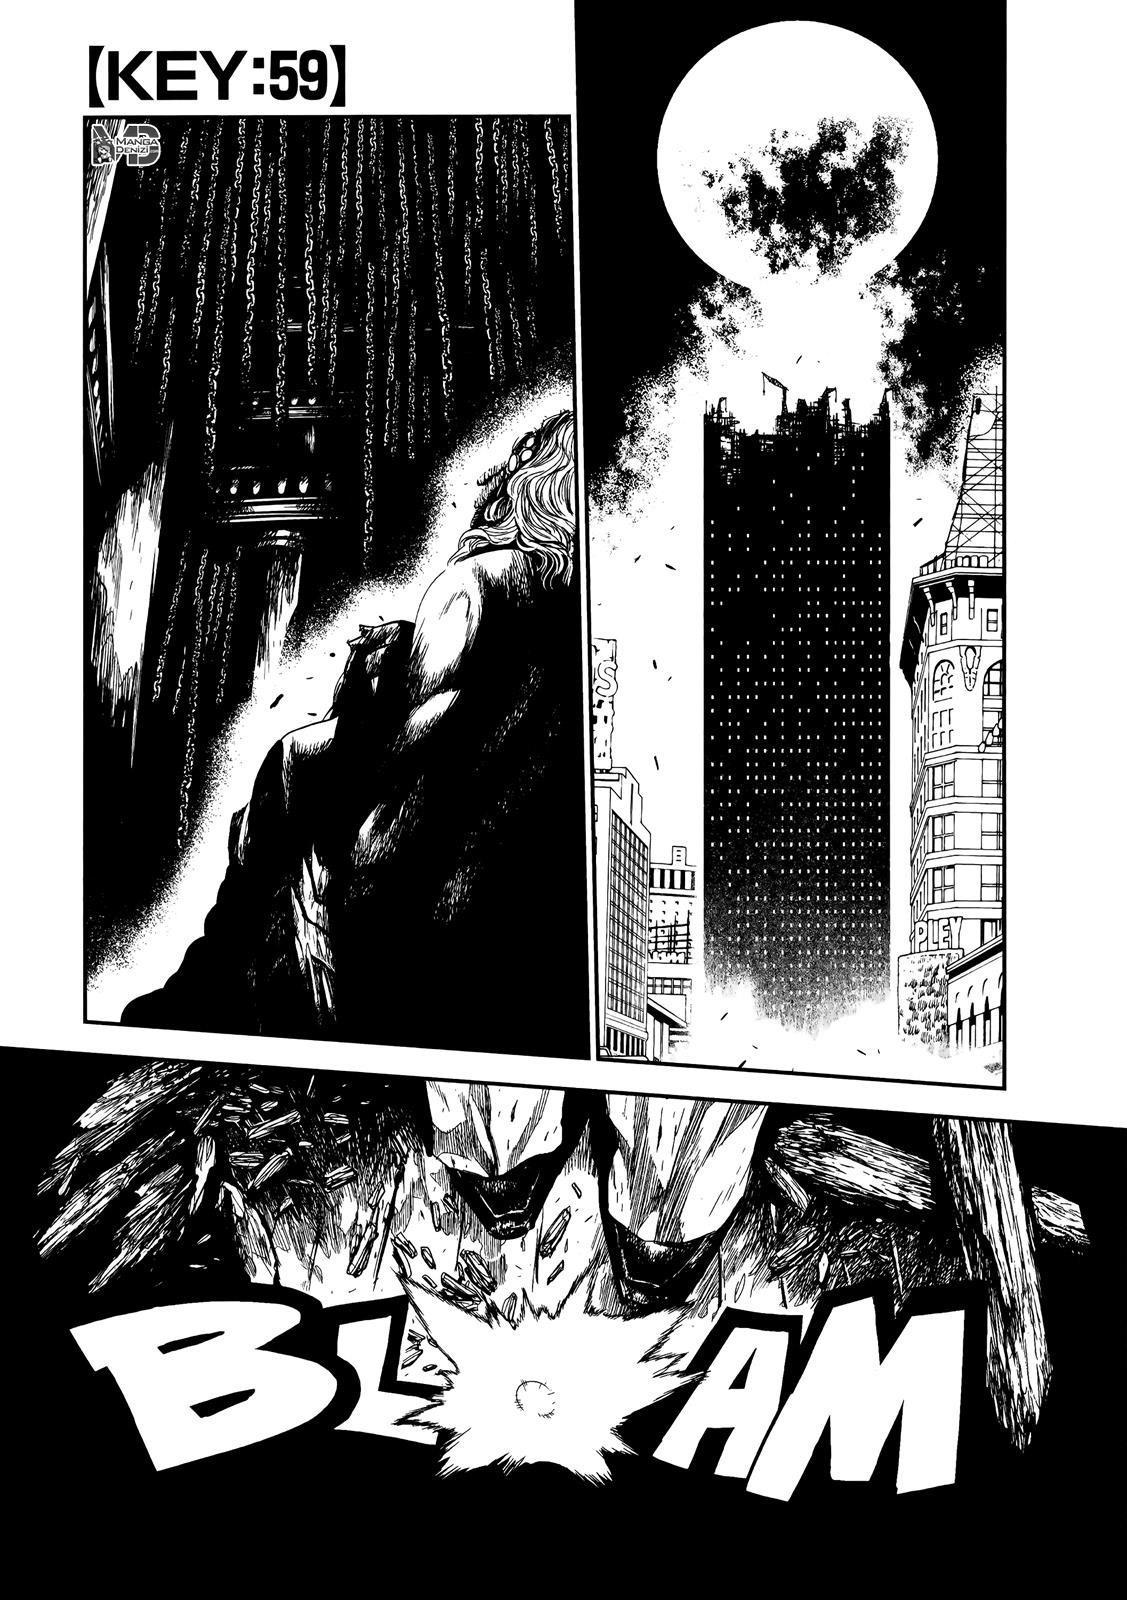 Keyman: The Hand of Judgement mangasının 59 bölümünün 2. sayfasını okuyorsunuz.